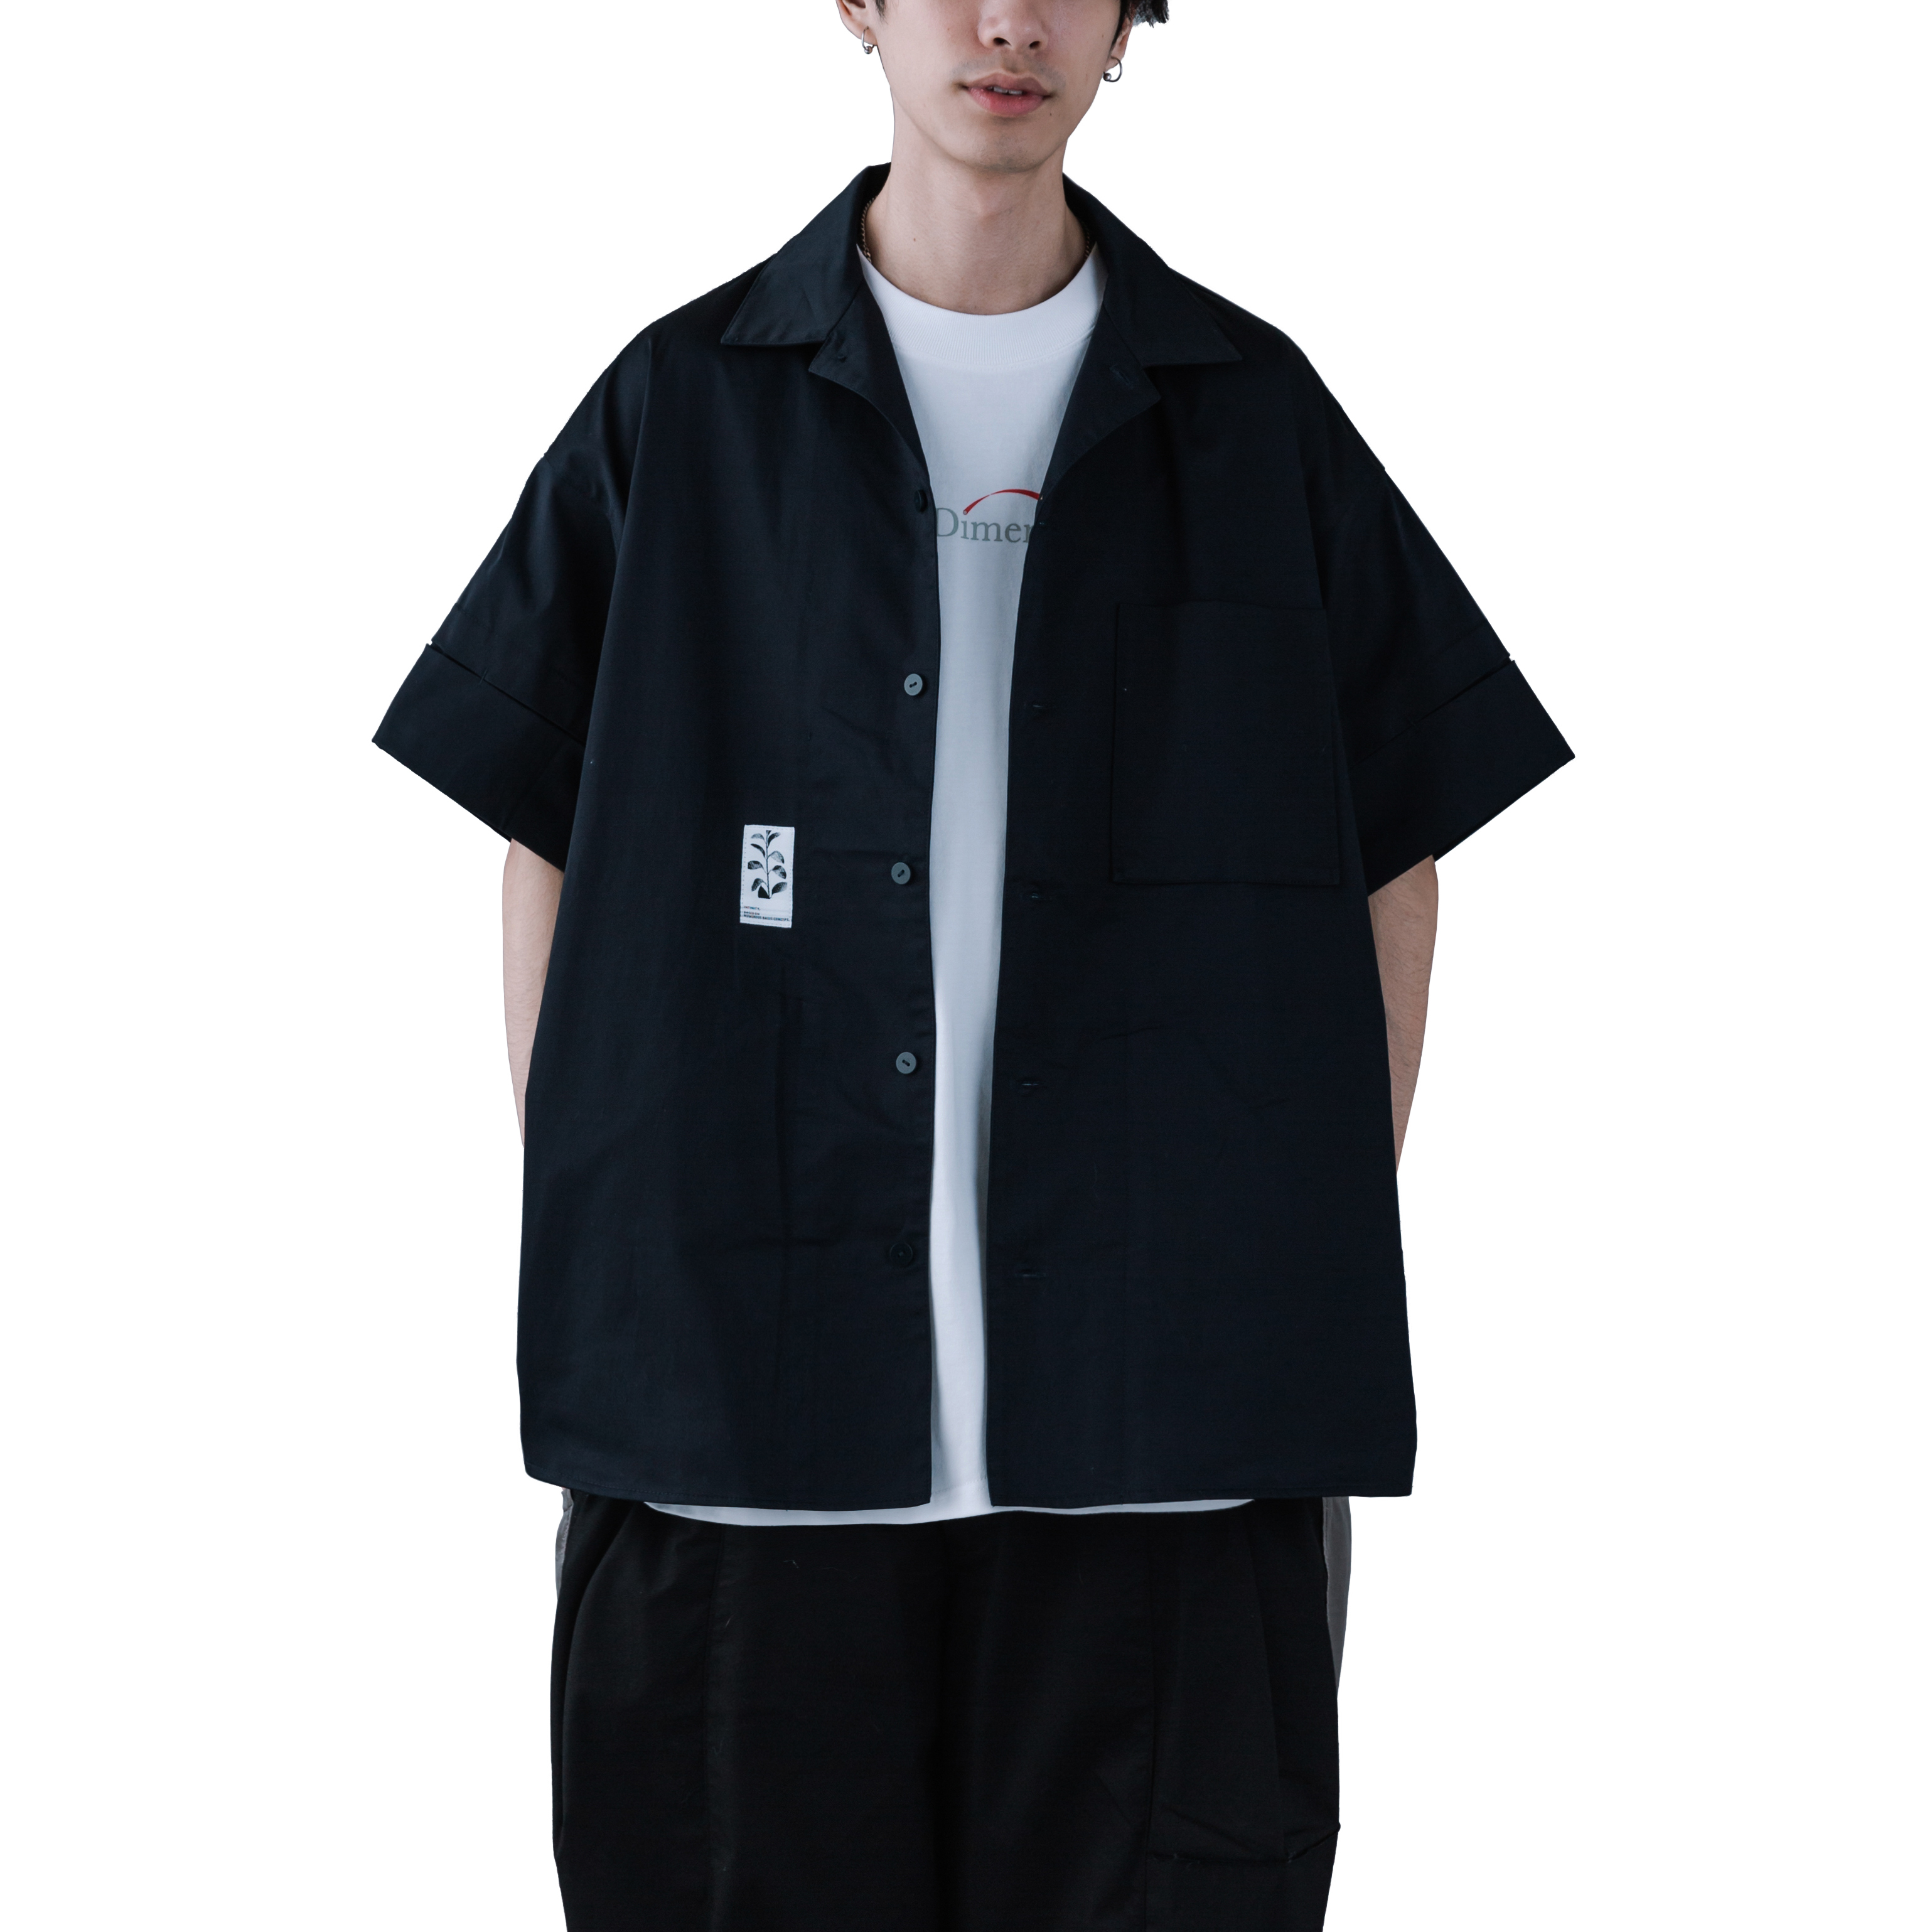 Melsign - Label Pocket Shirt - Navy